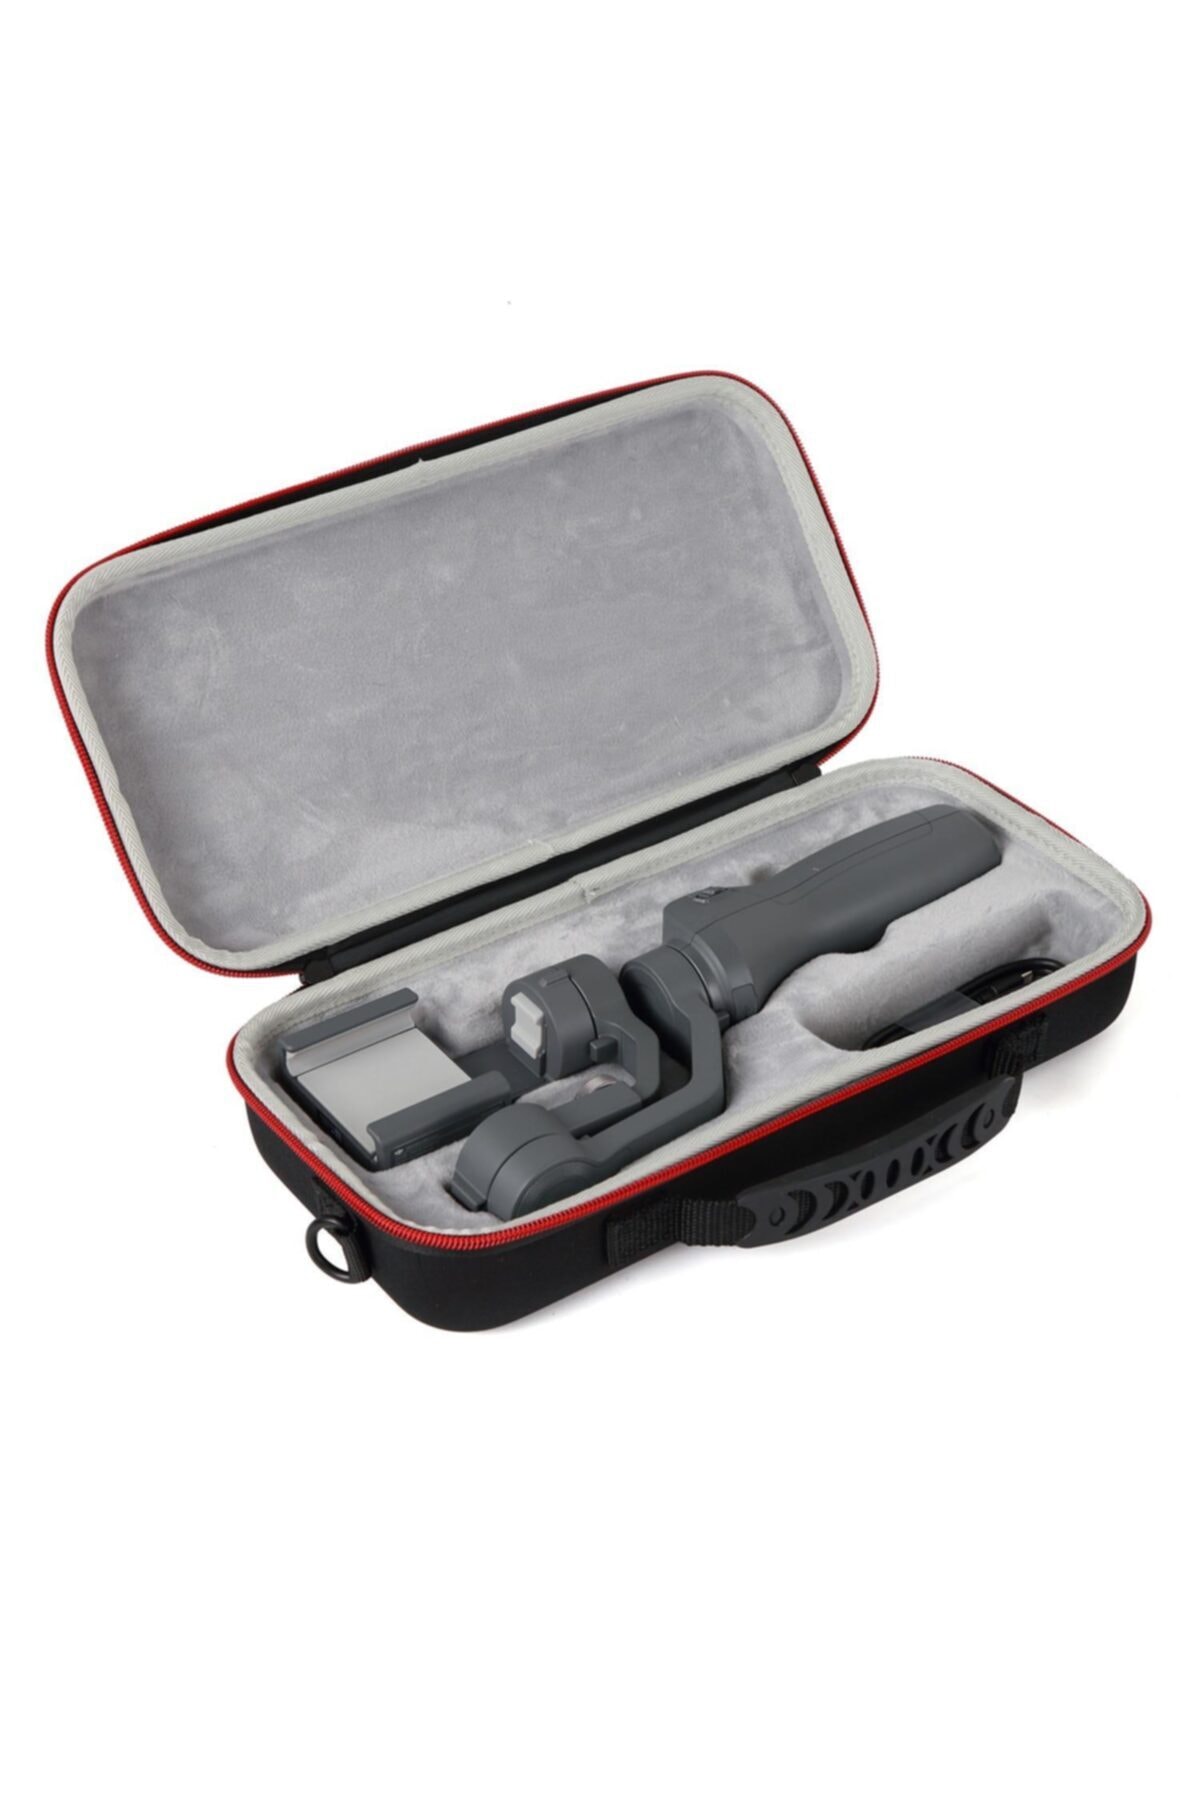 Djı Osmo Mobile2 Gimbal Kamera Depolama Taşıma Koruyucu Çanta